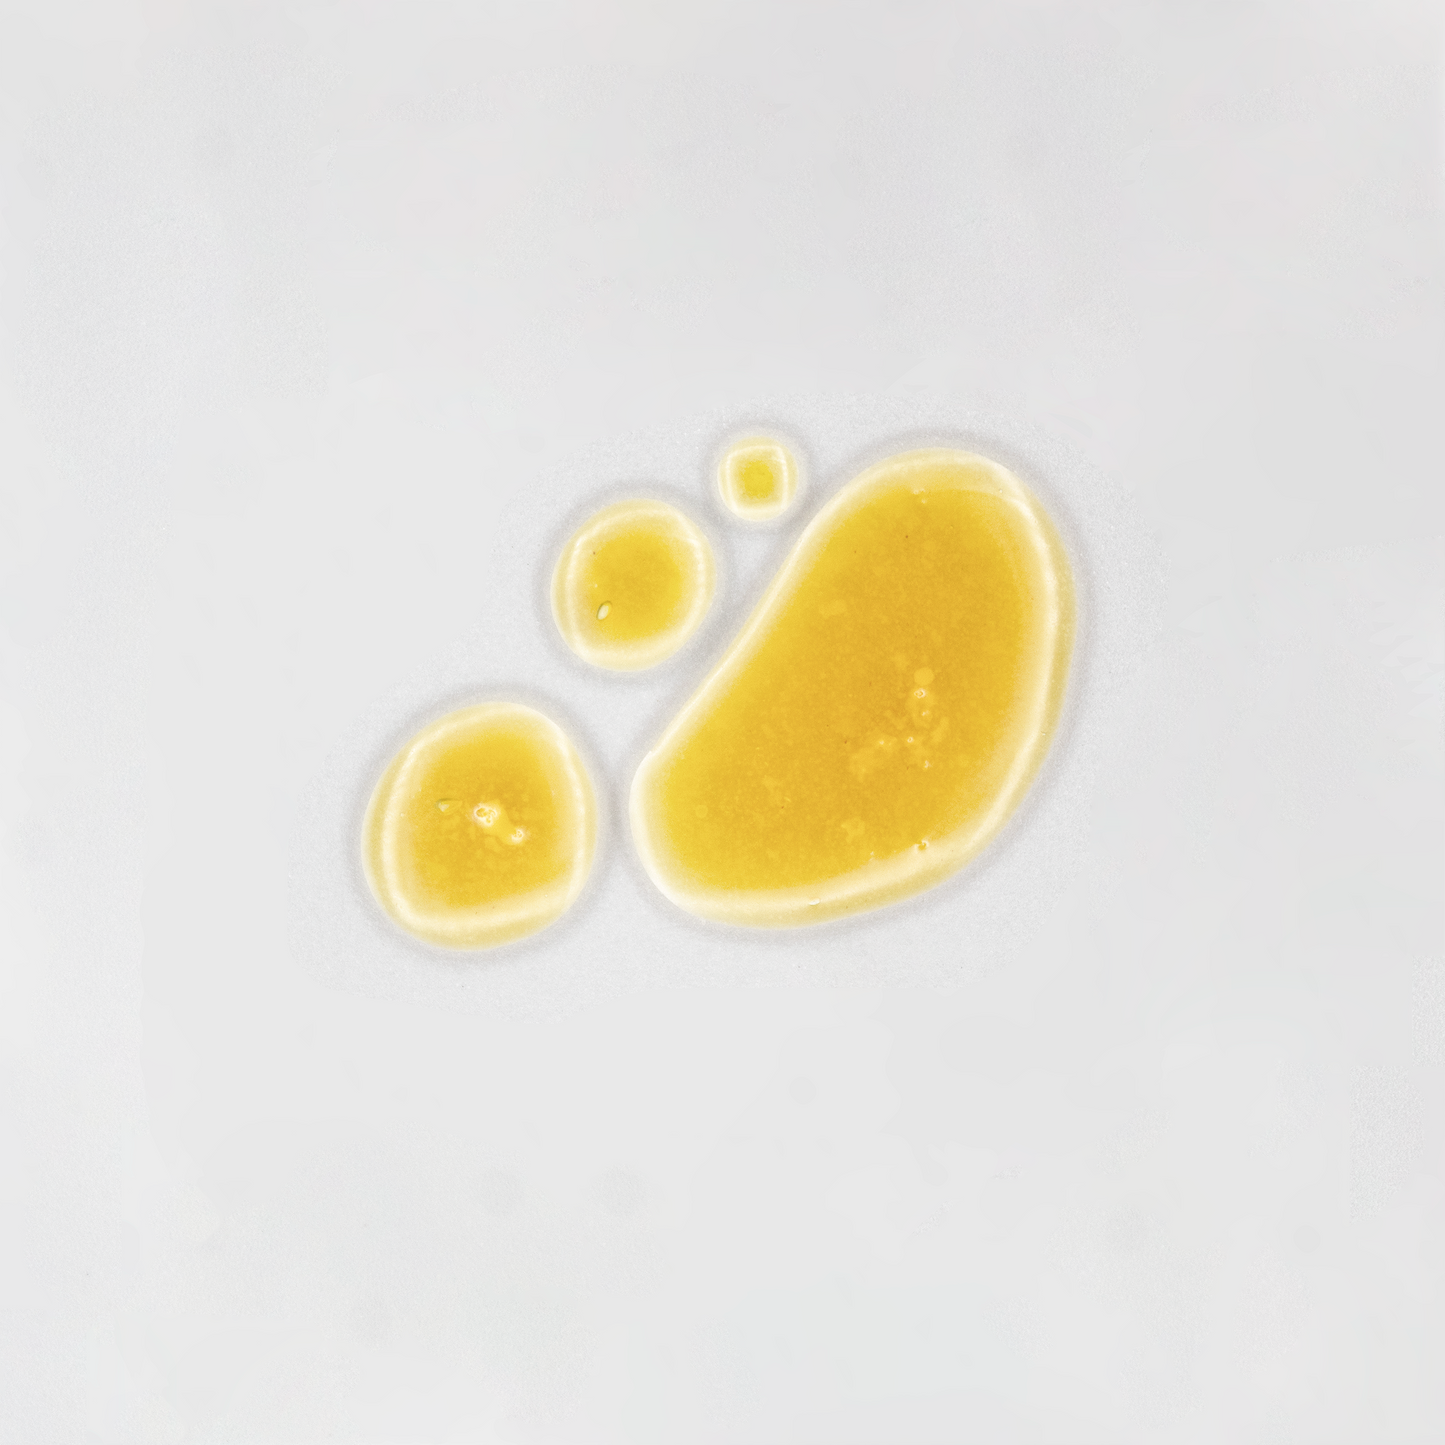 Ojon Oil / Caiaue Oil - Natural Unrefined